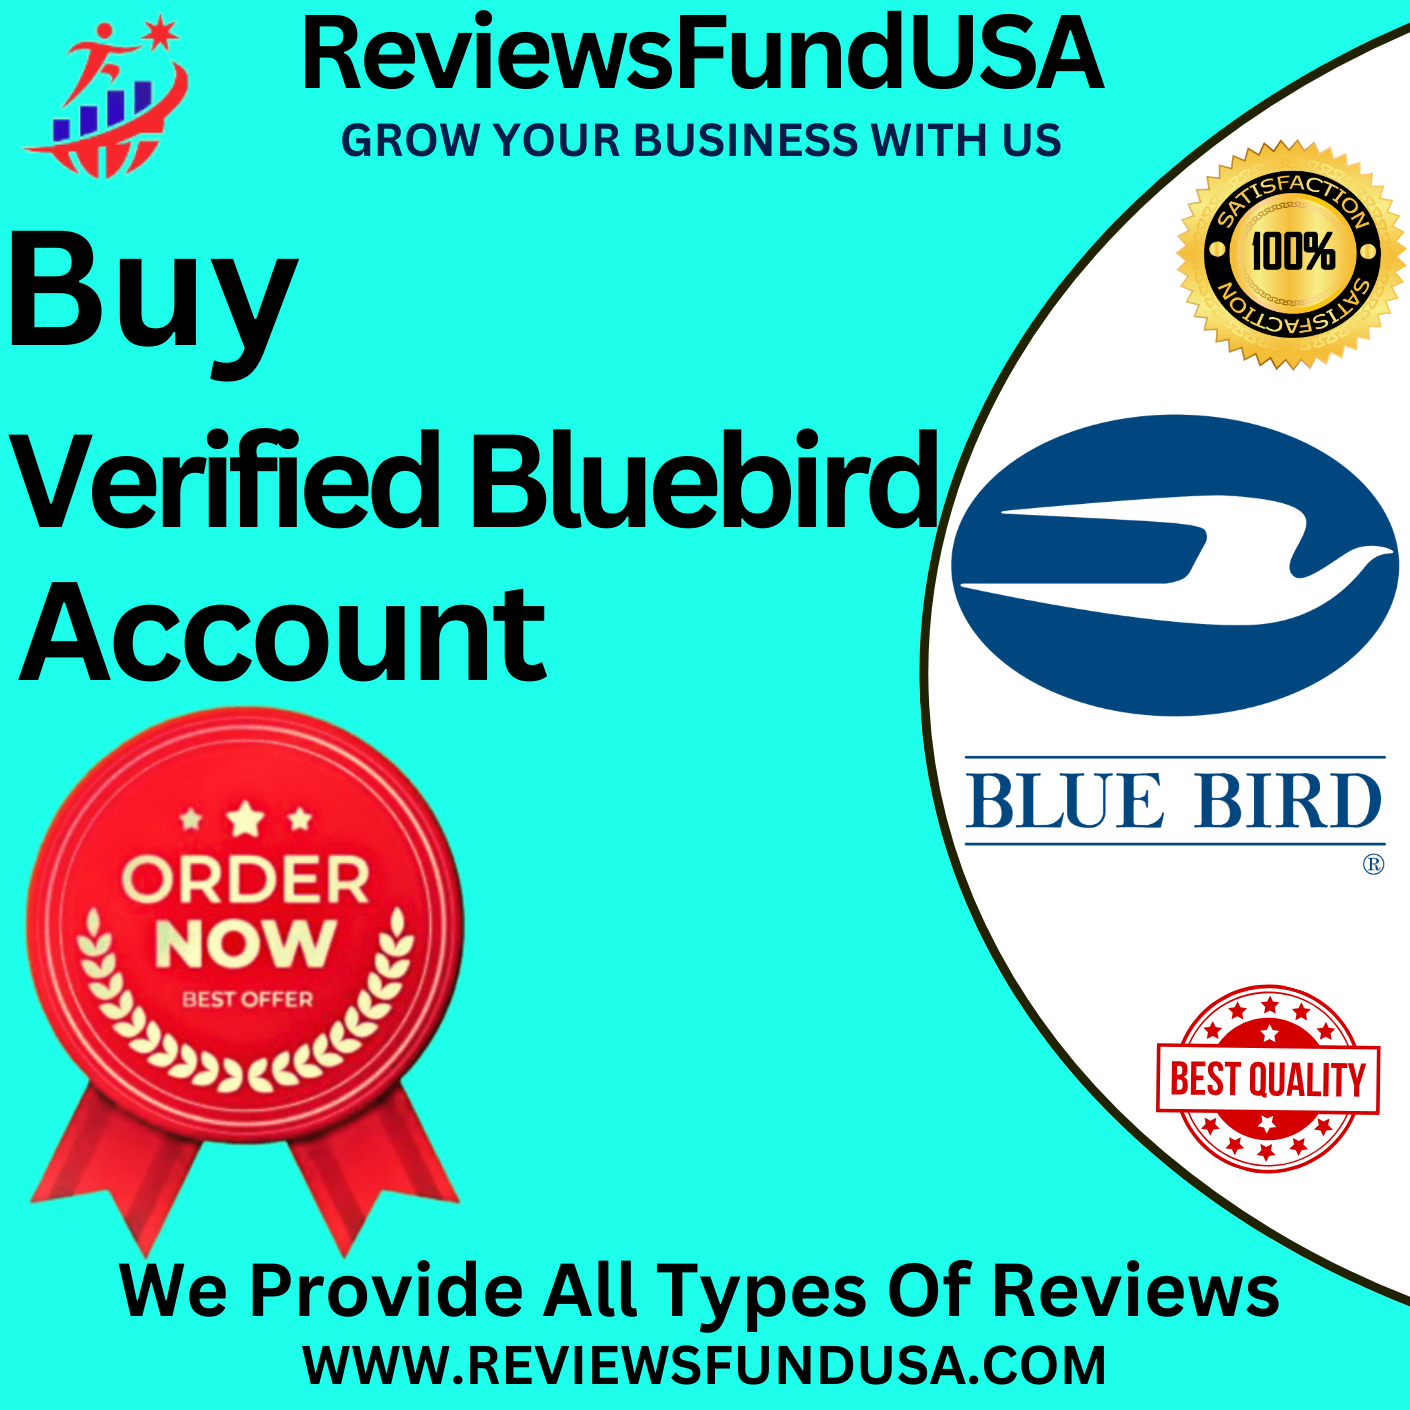 Buy Verified Bluebird Accounts - ReviewsFundUSA